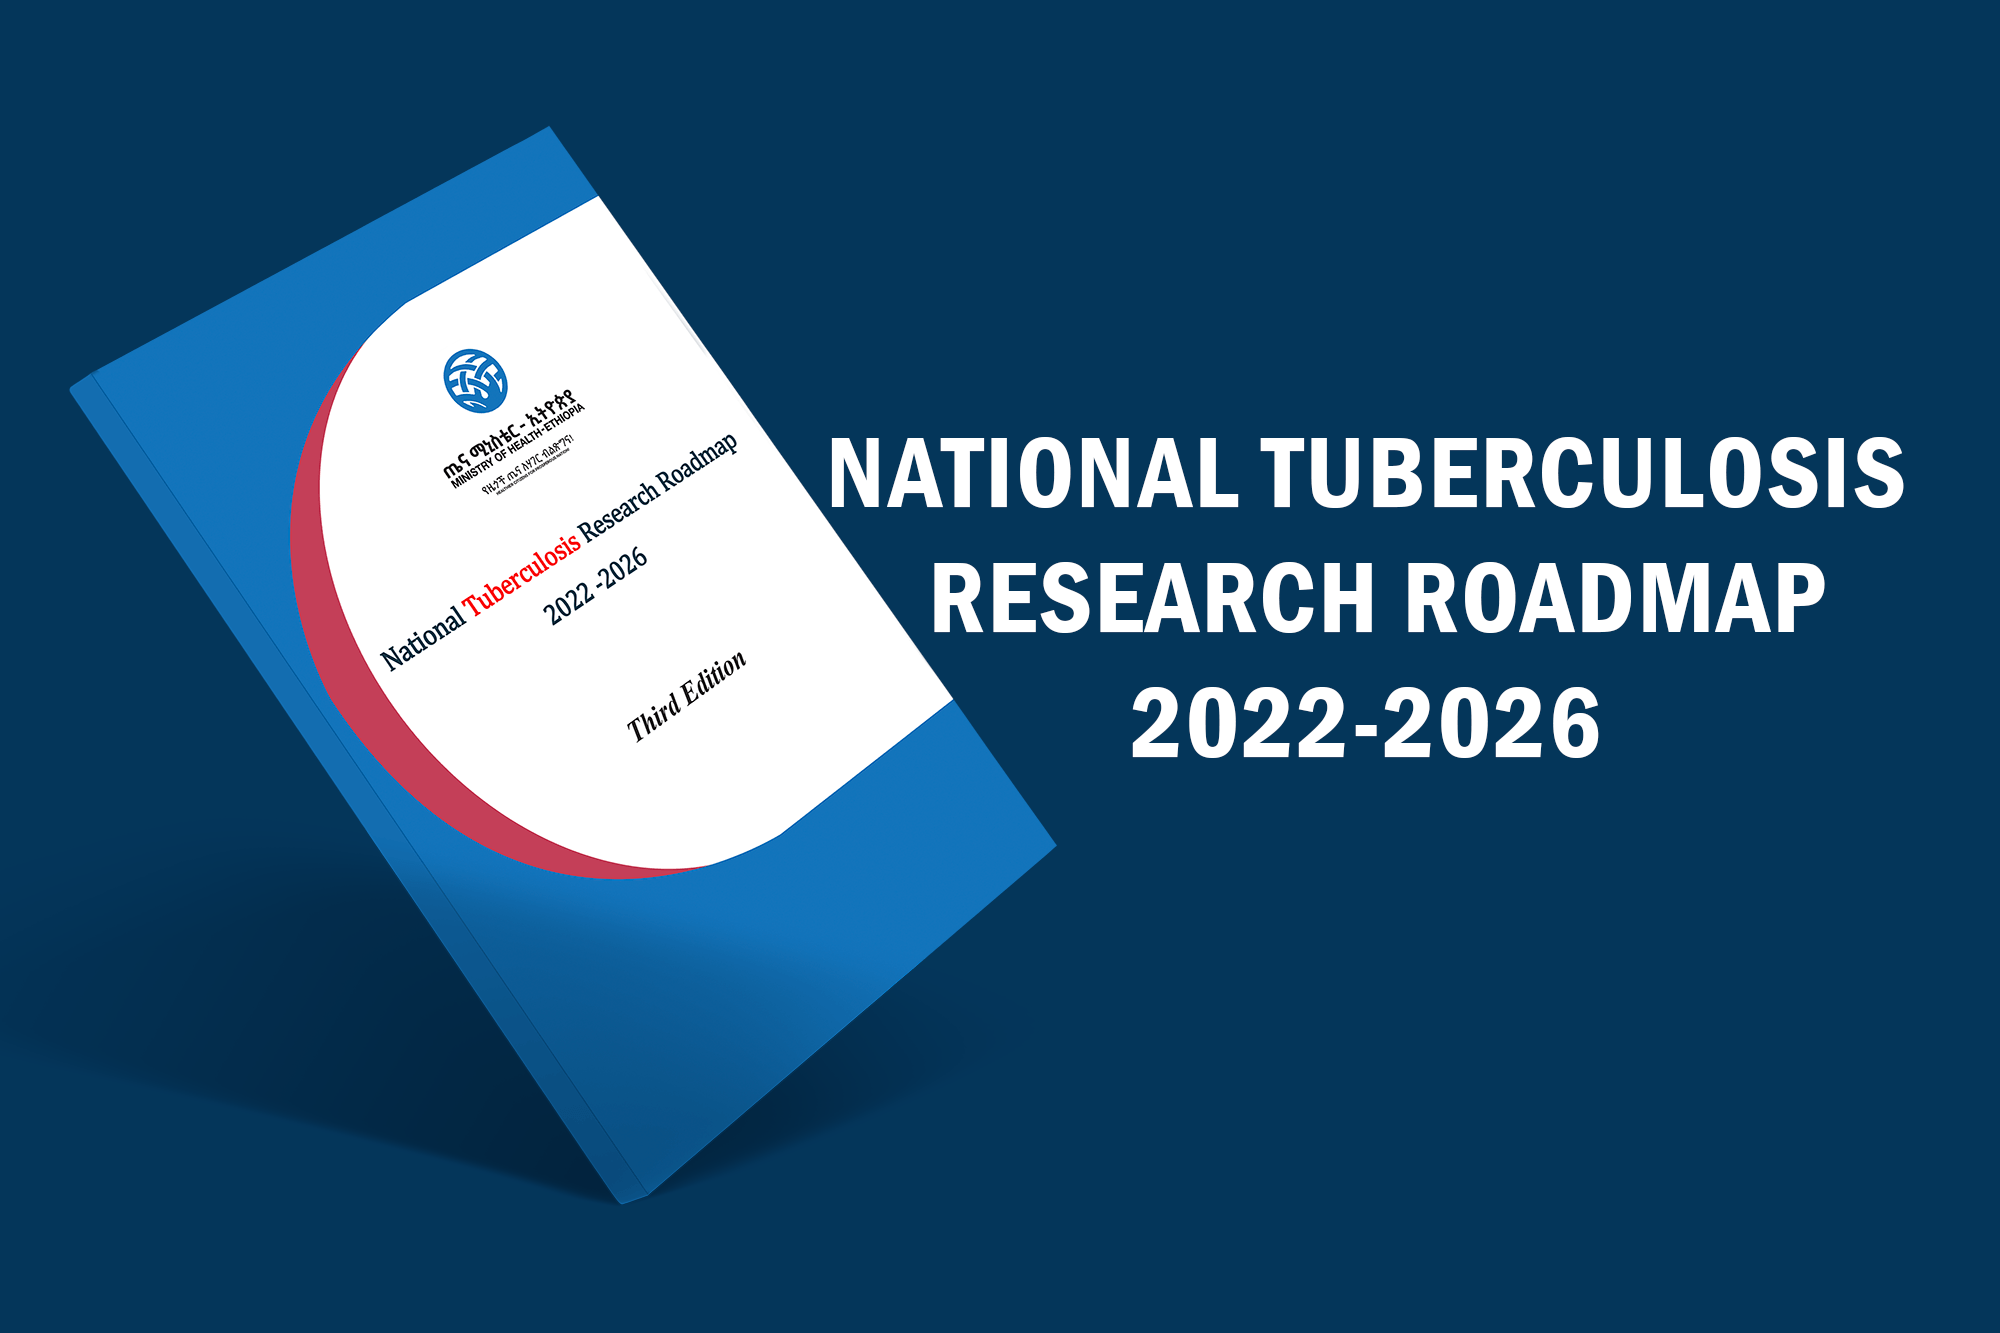 National Tuberculosis Research Roadmap: 2022-2026